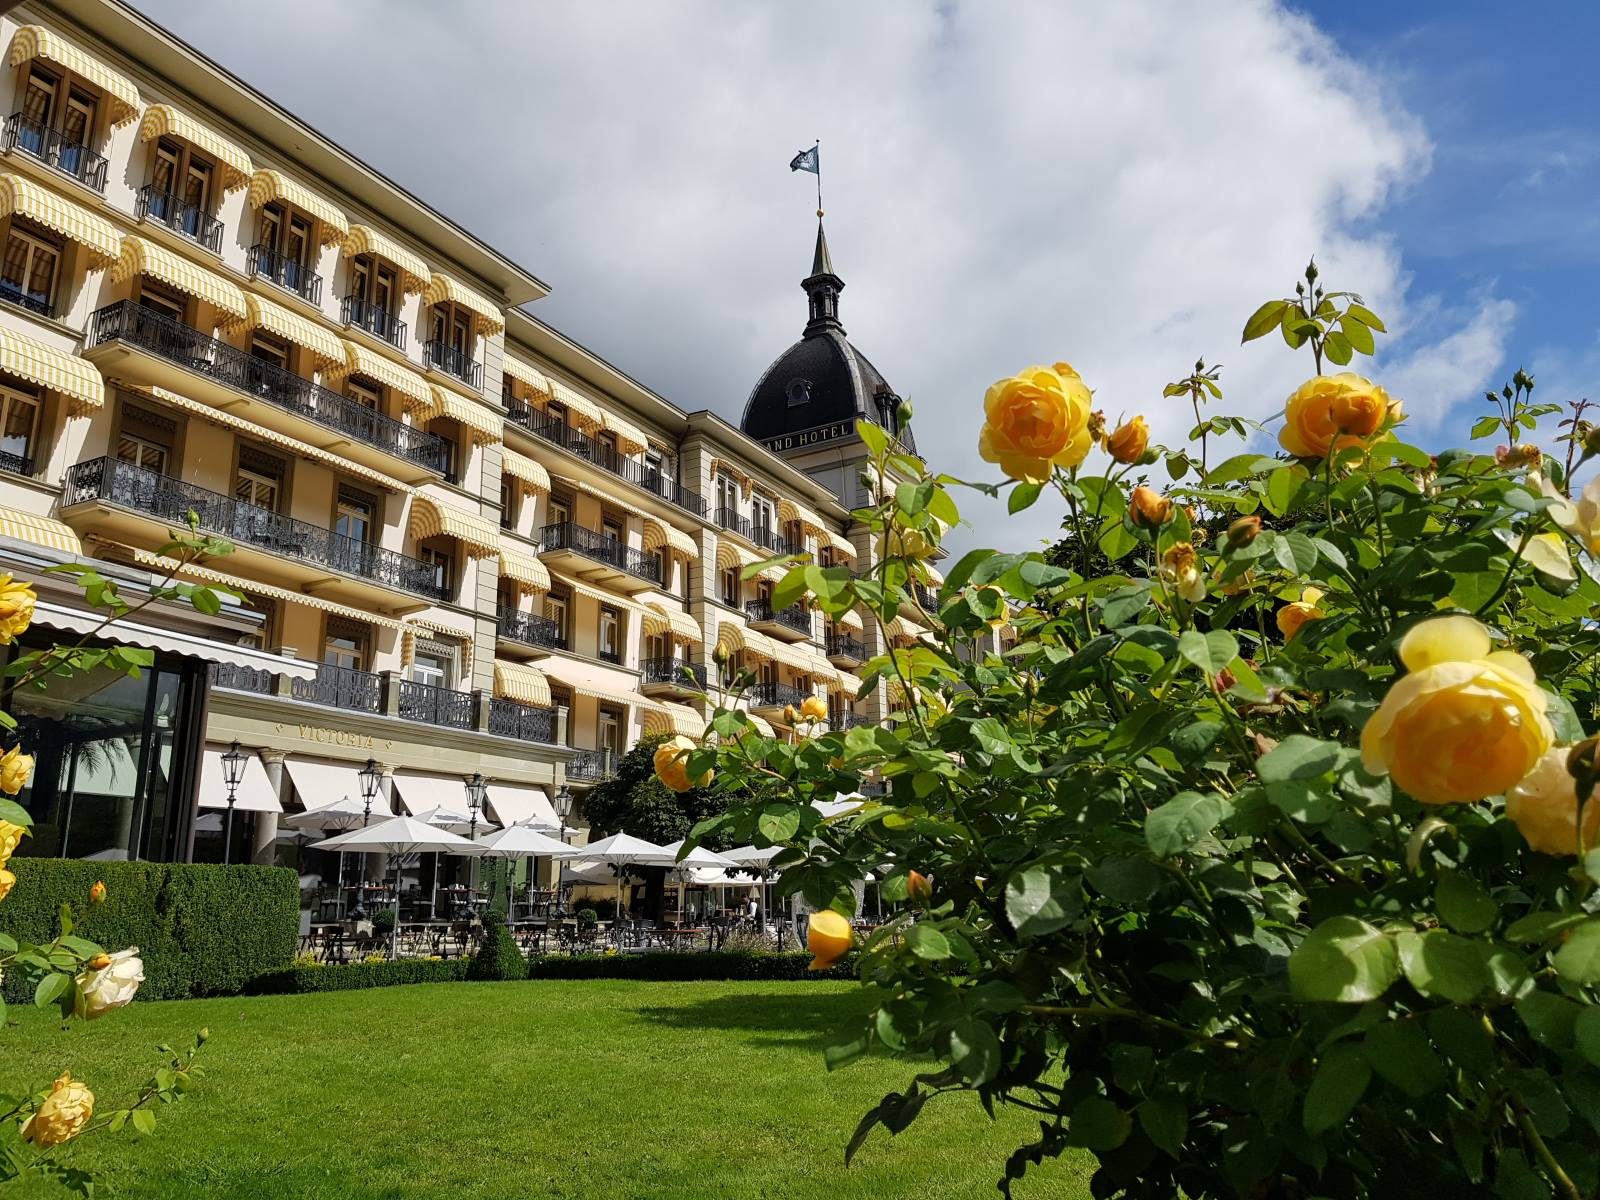 Victoria Jungfrau Grand Hotel & Spa - Seminarhotel im Berner Oberland